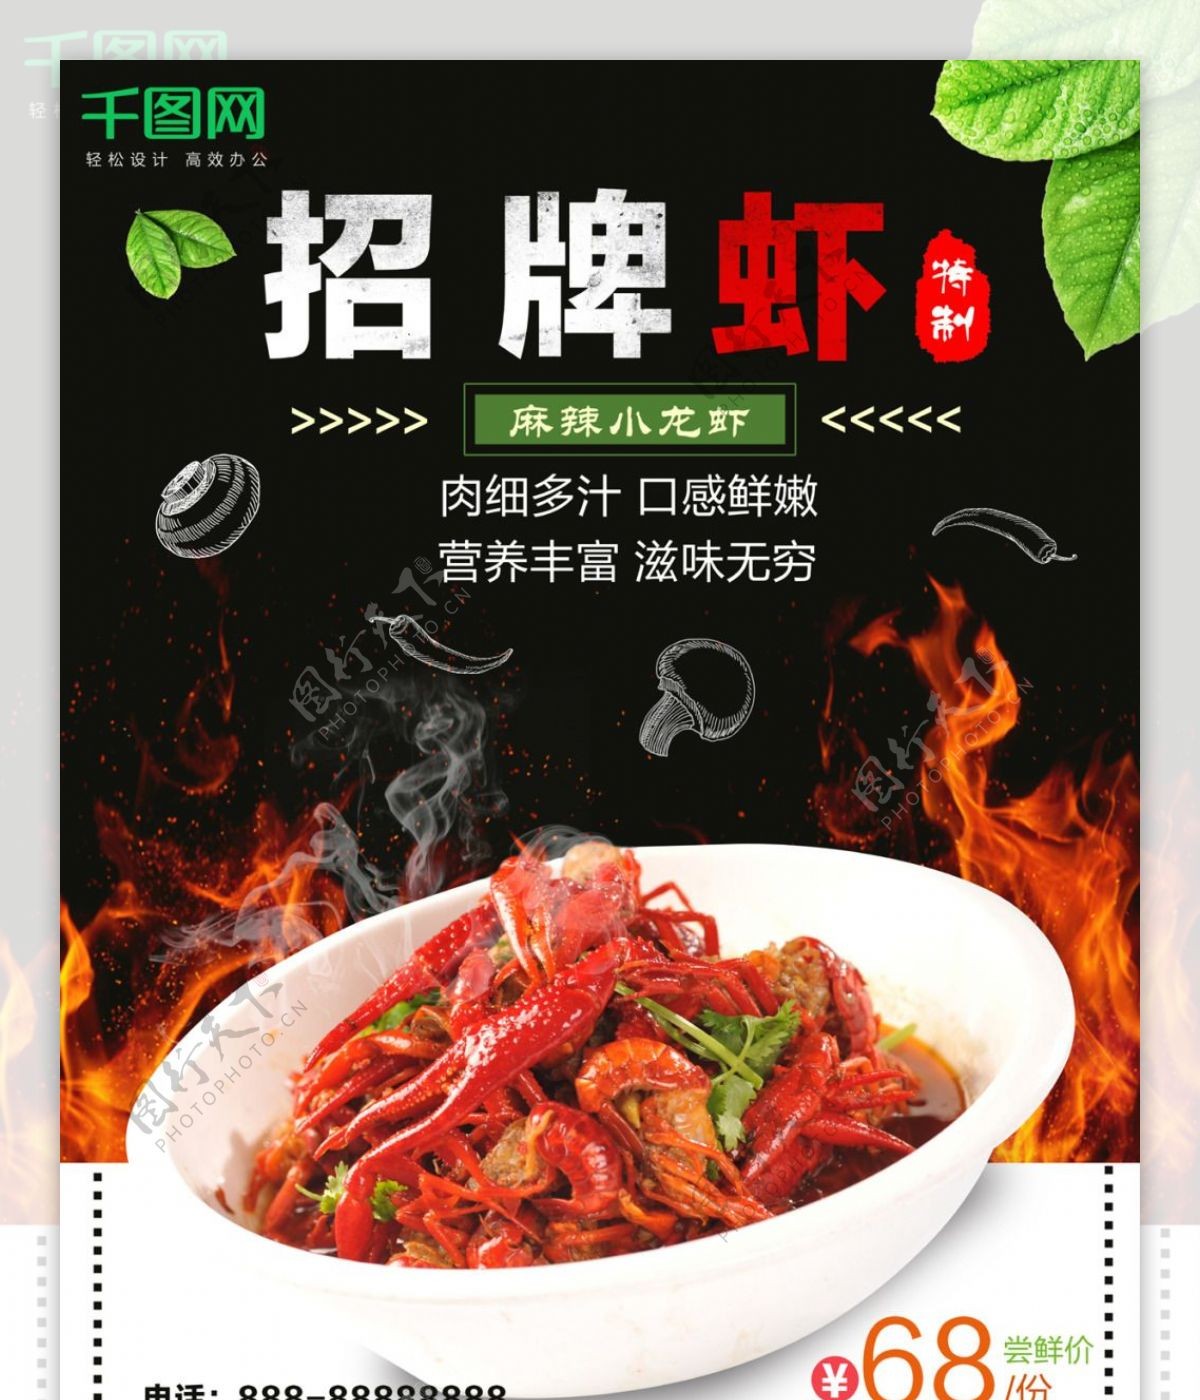 夏季美食麻辣小龙虾促销海报设计